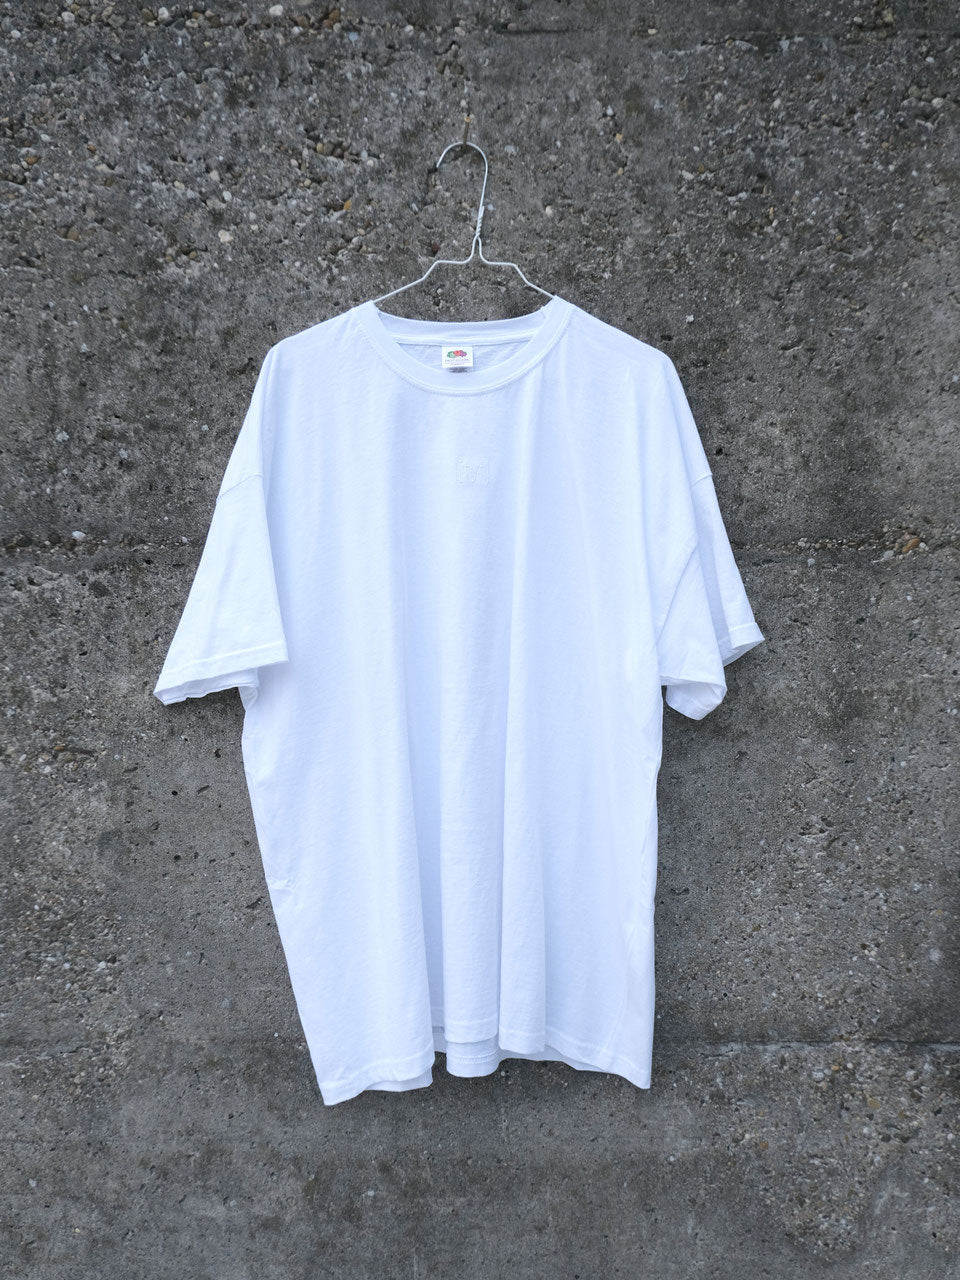 Fyt logo t-shirt white